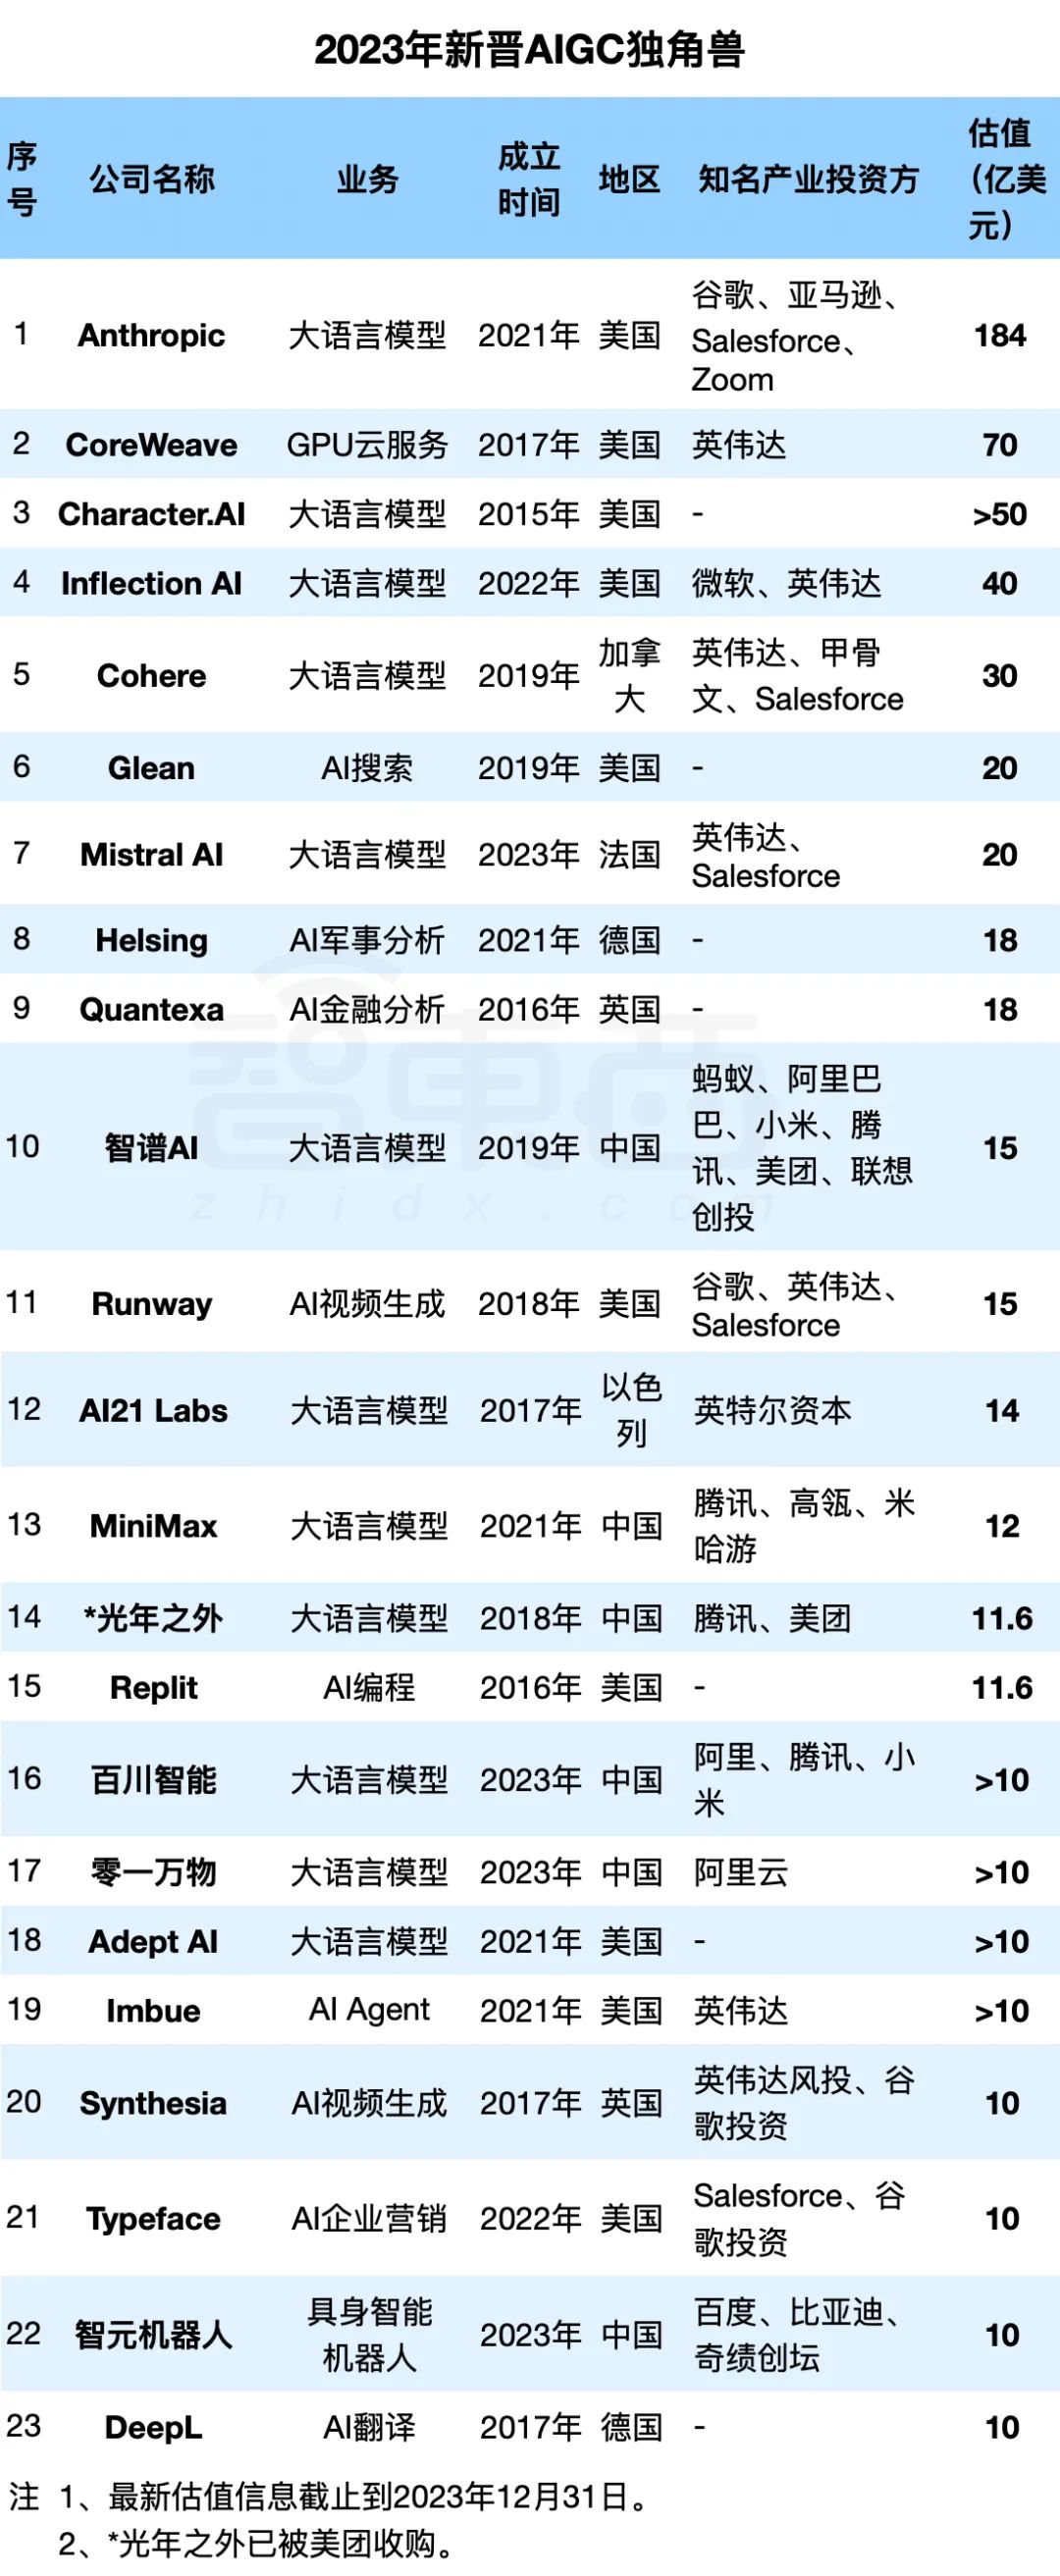 2023年新晋AIGC独角兽：23家企业，最高估值千亿，6家来自中国